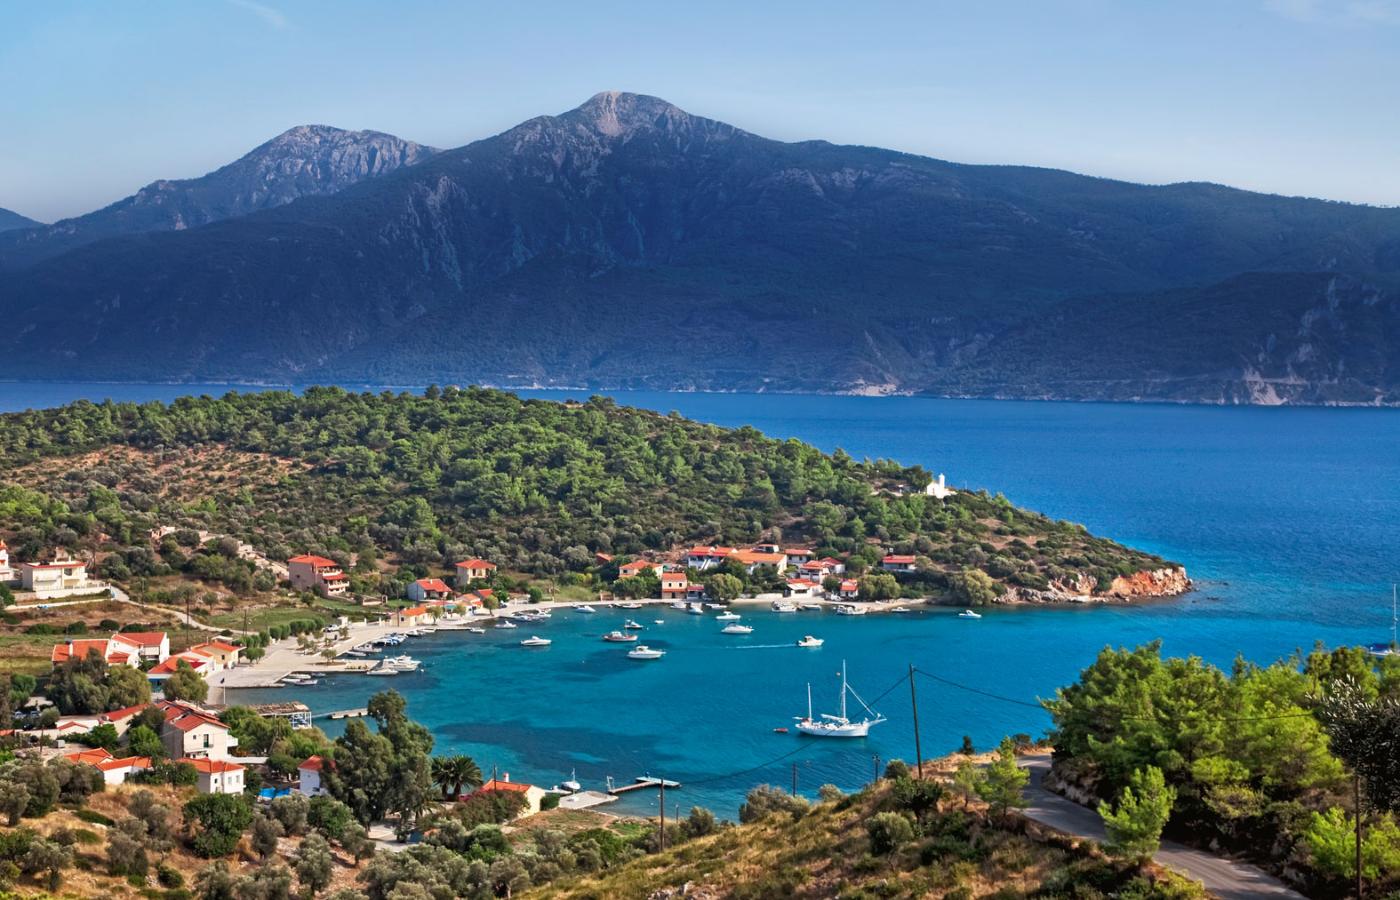 Widok na wyspę Samos, za nią widoczne tureckie wybrzeże. W najwęższym miejscu cieśnina ma półtora kilometra.